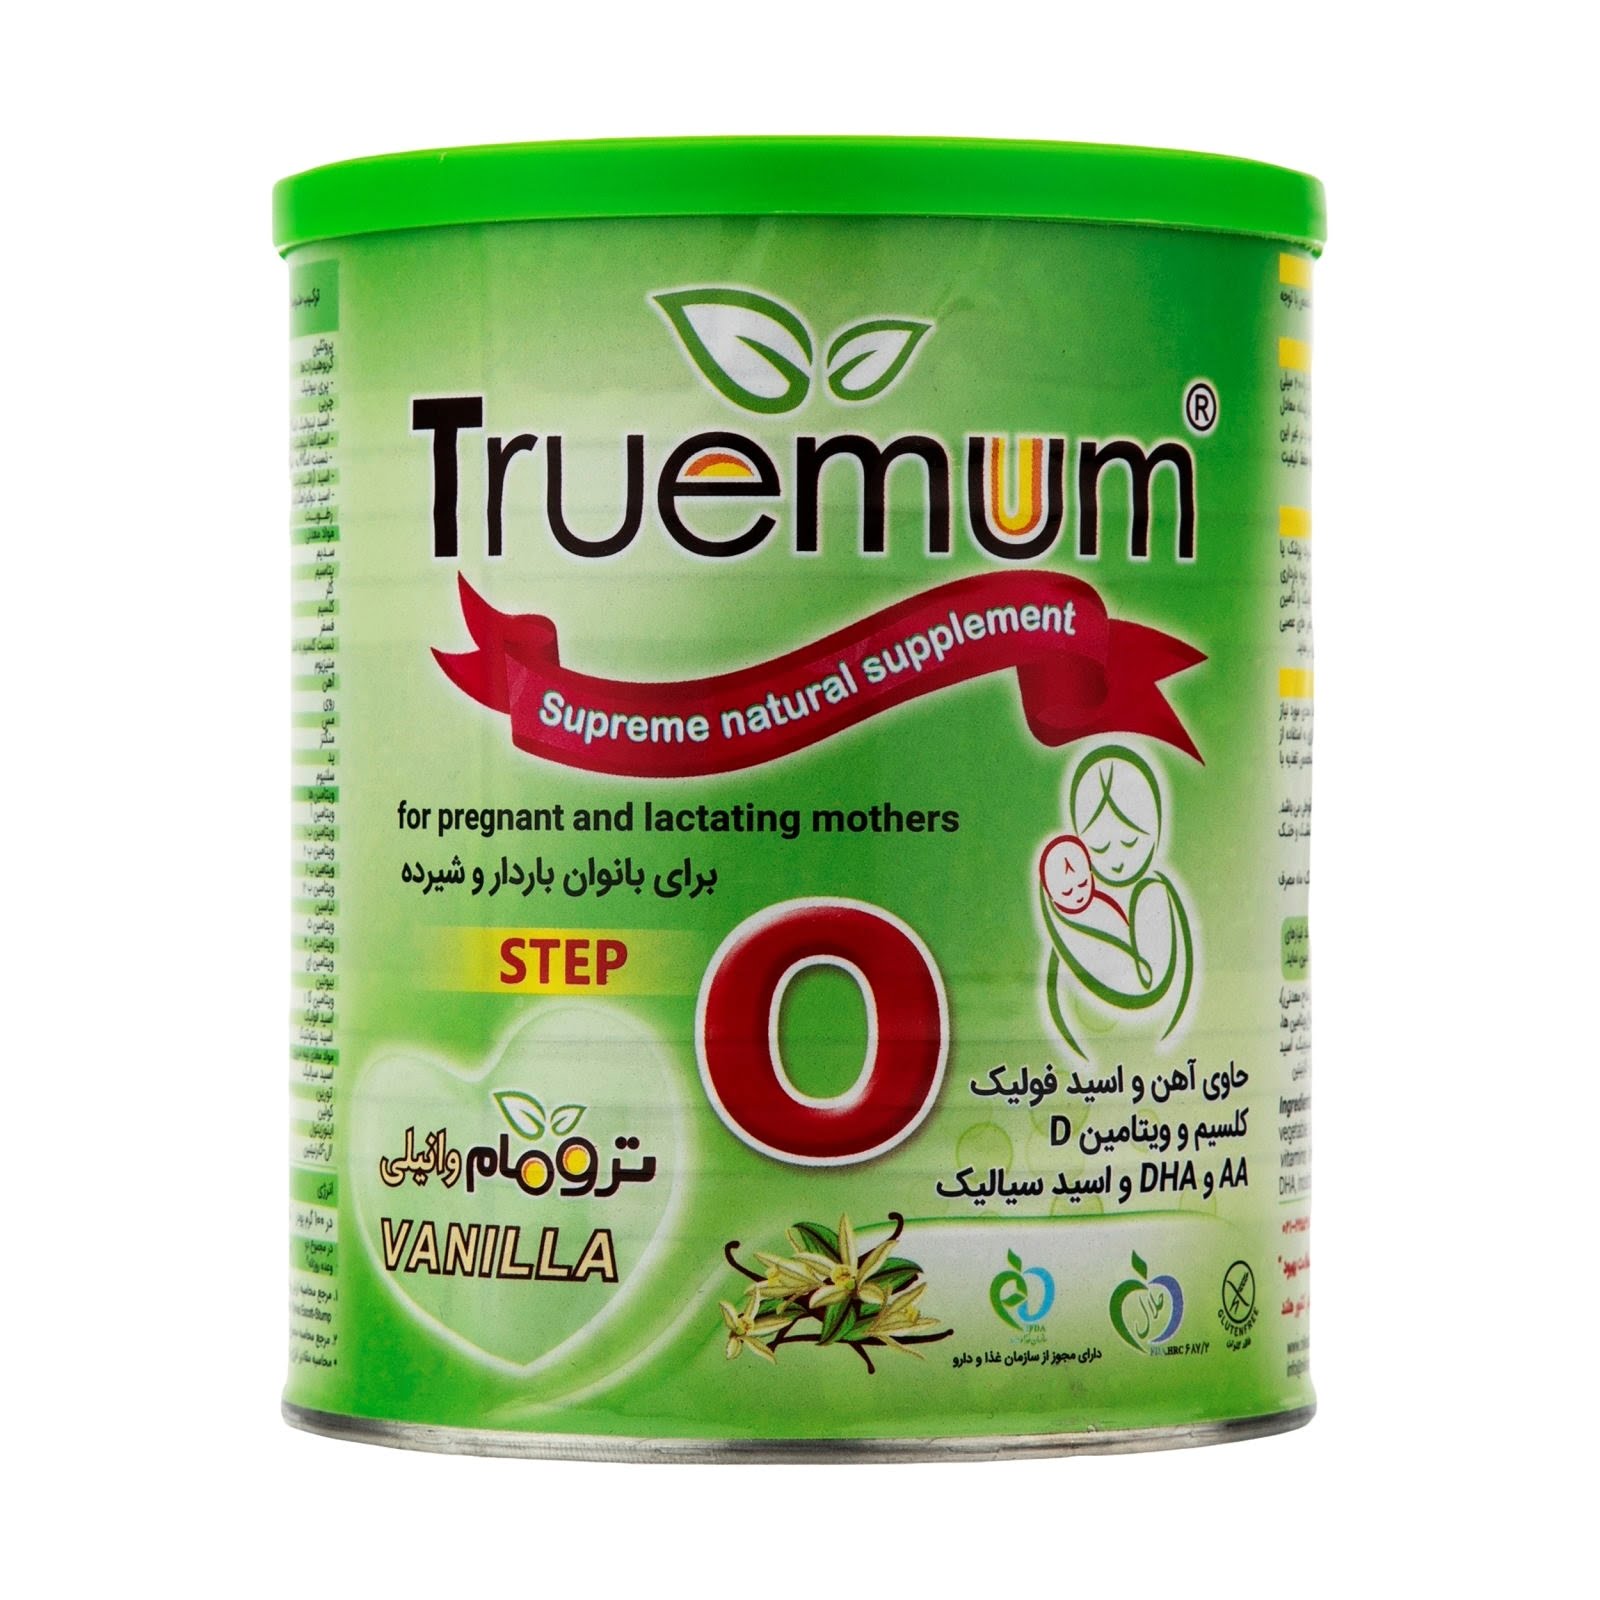 مکمل غذایی طبیعی ترومام برای بانوان باردار و شیرده 400 گرمی N. S. B. Truemum Supreme Natural Supplement For Pregnant and Lactating Mothers 400 g